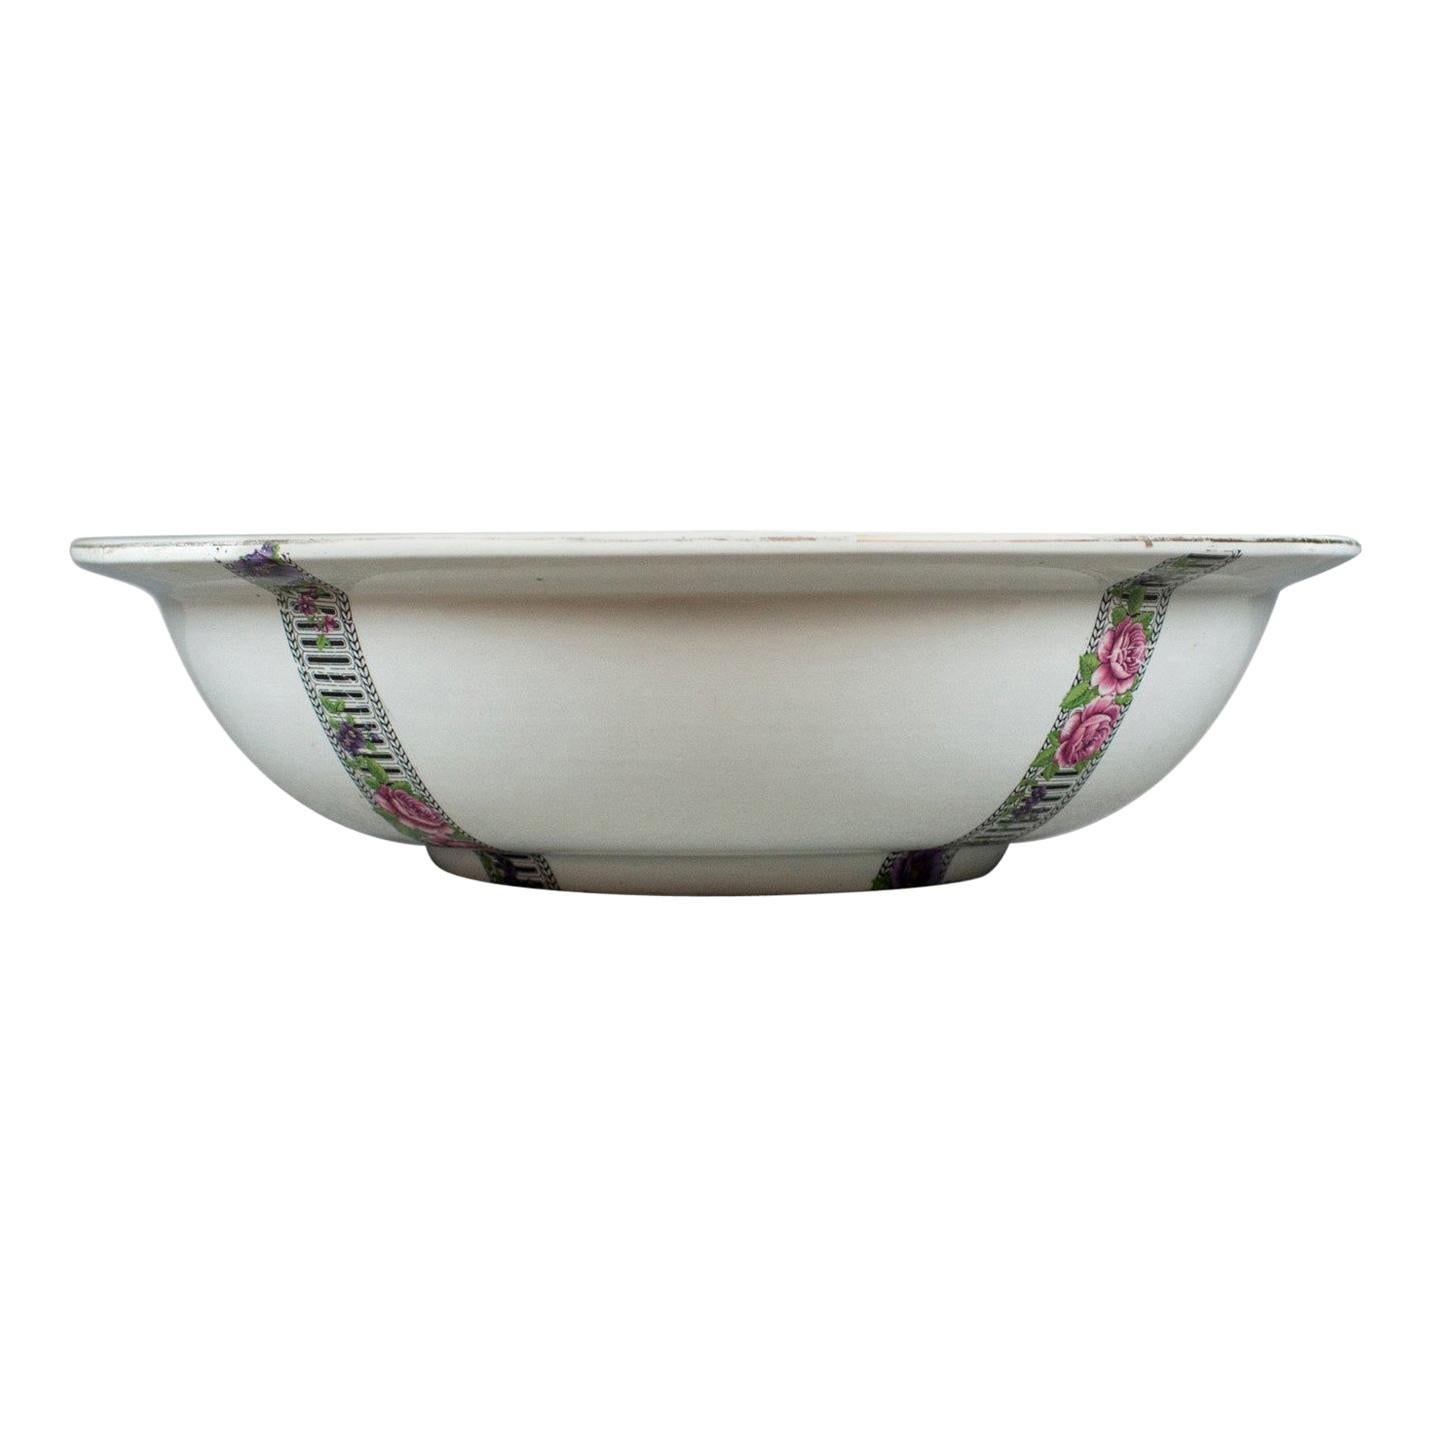 Large Vintage Fruit Bowl, Ceramic Basin, White, Decorative, Floral Bands For Sale